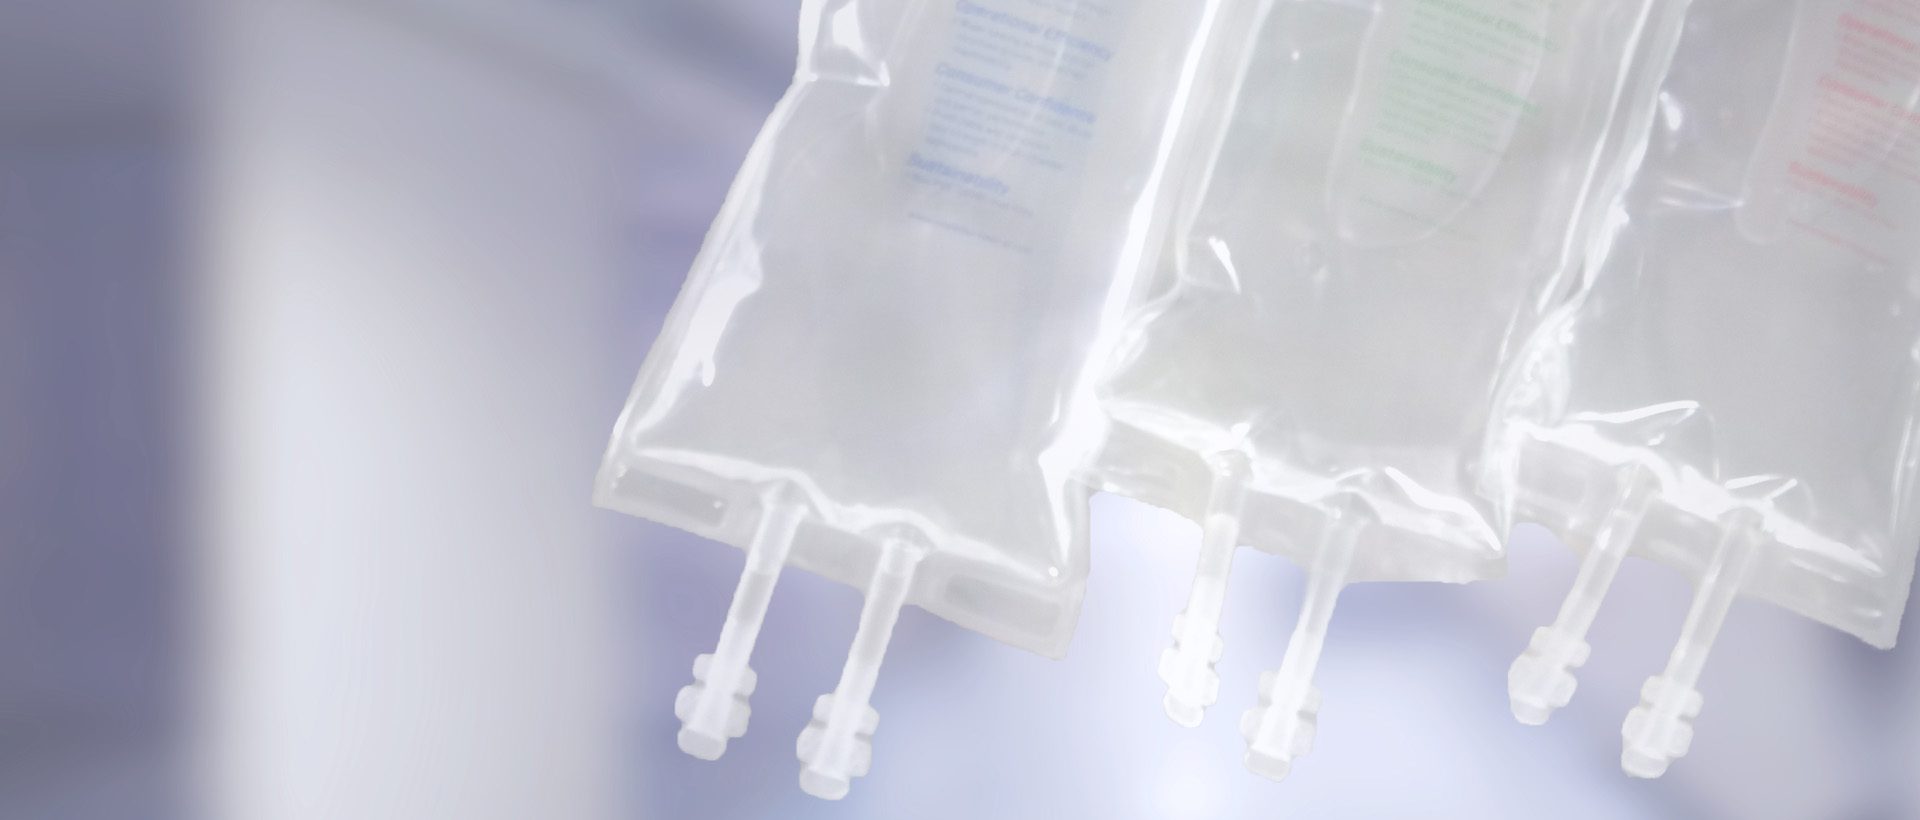 IV-Beutel, die in medizinischen Folien verwendet werden